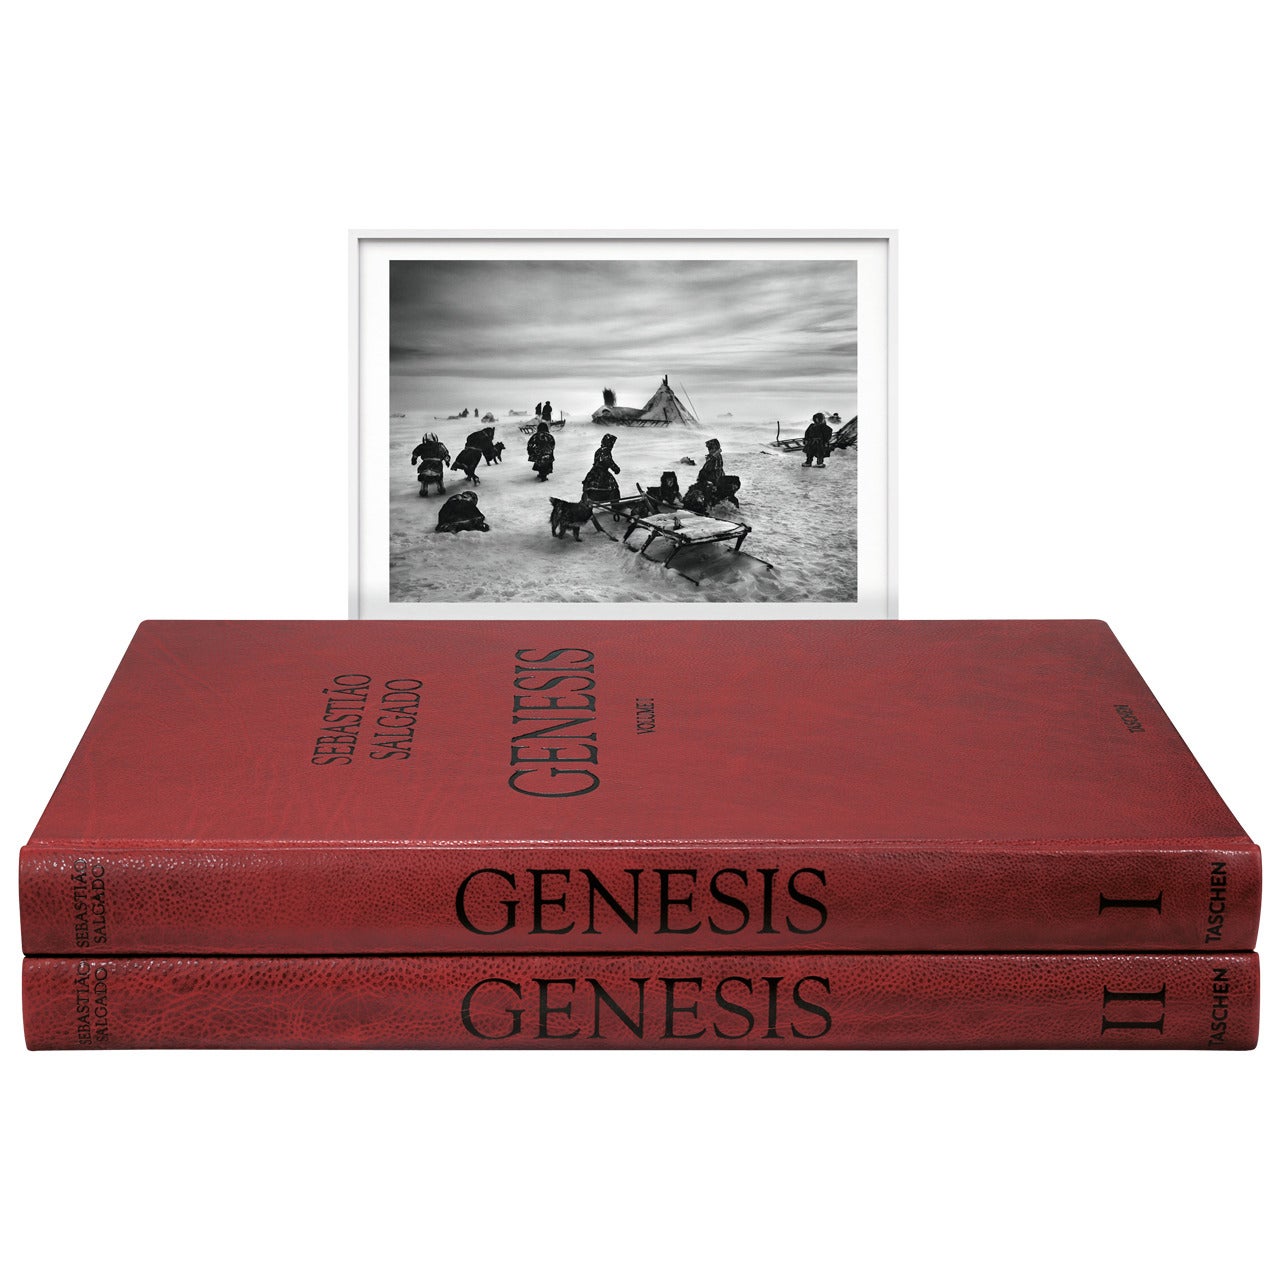 Sebastião Salgado "Genesis", Art Edition B For Sale